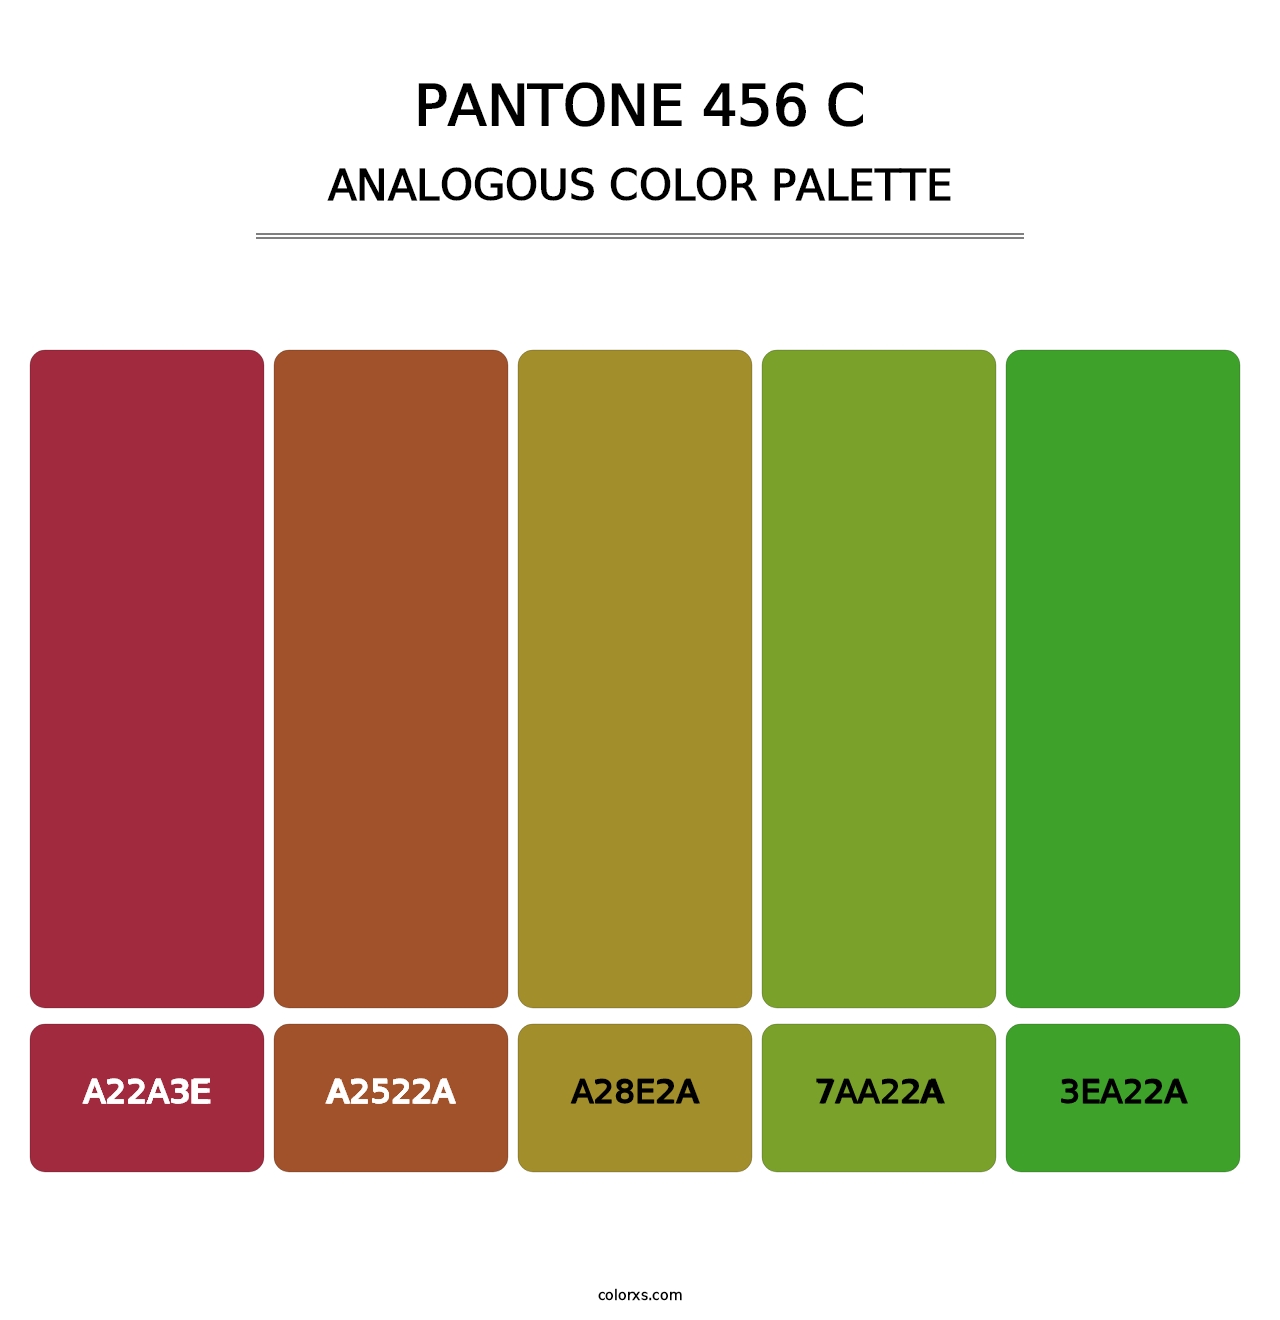 PANTONE 456 C - Analogous Color Palette